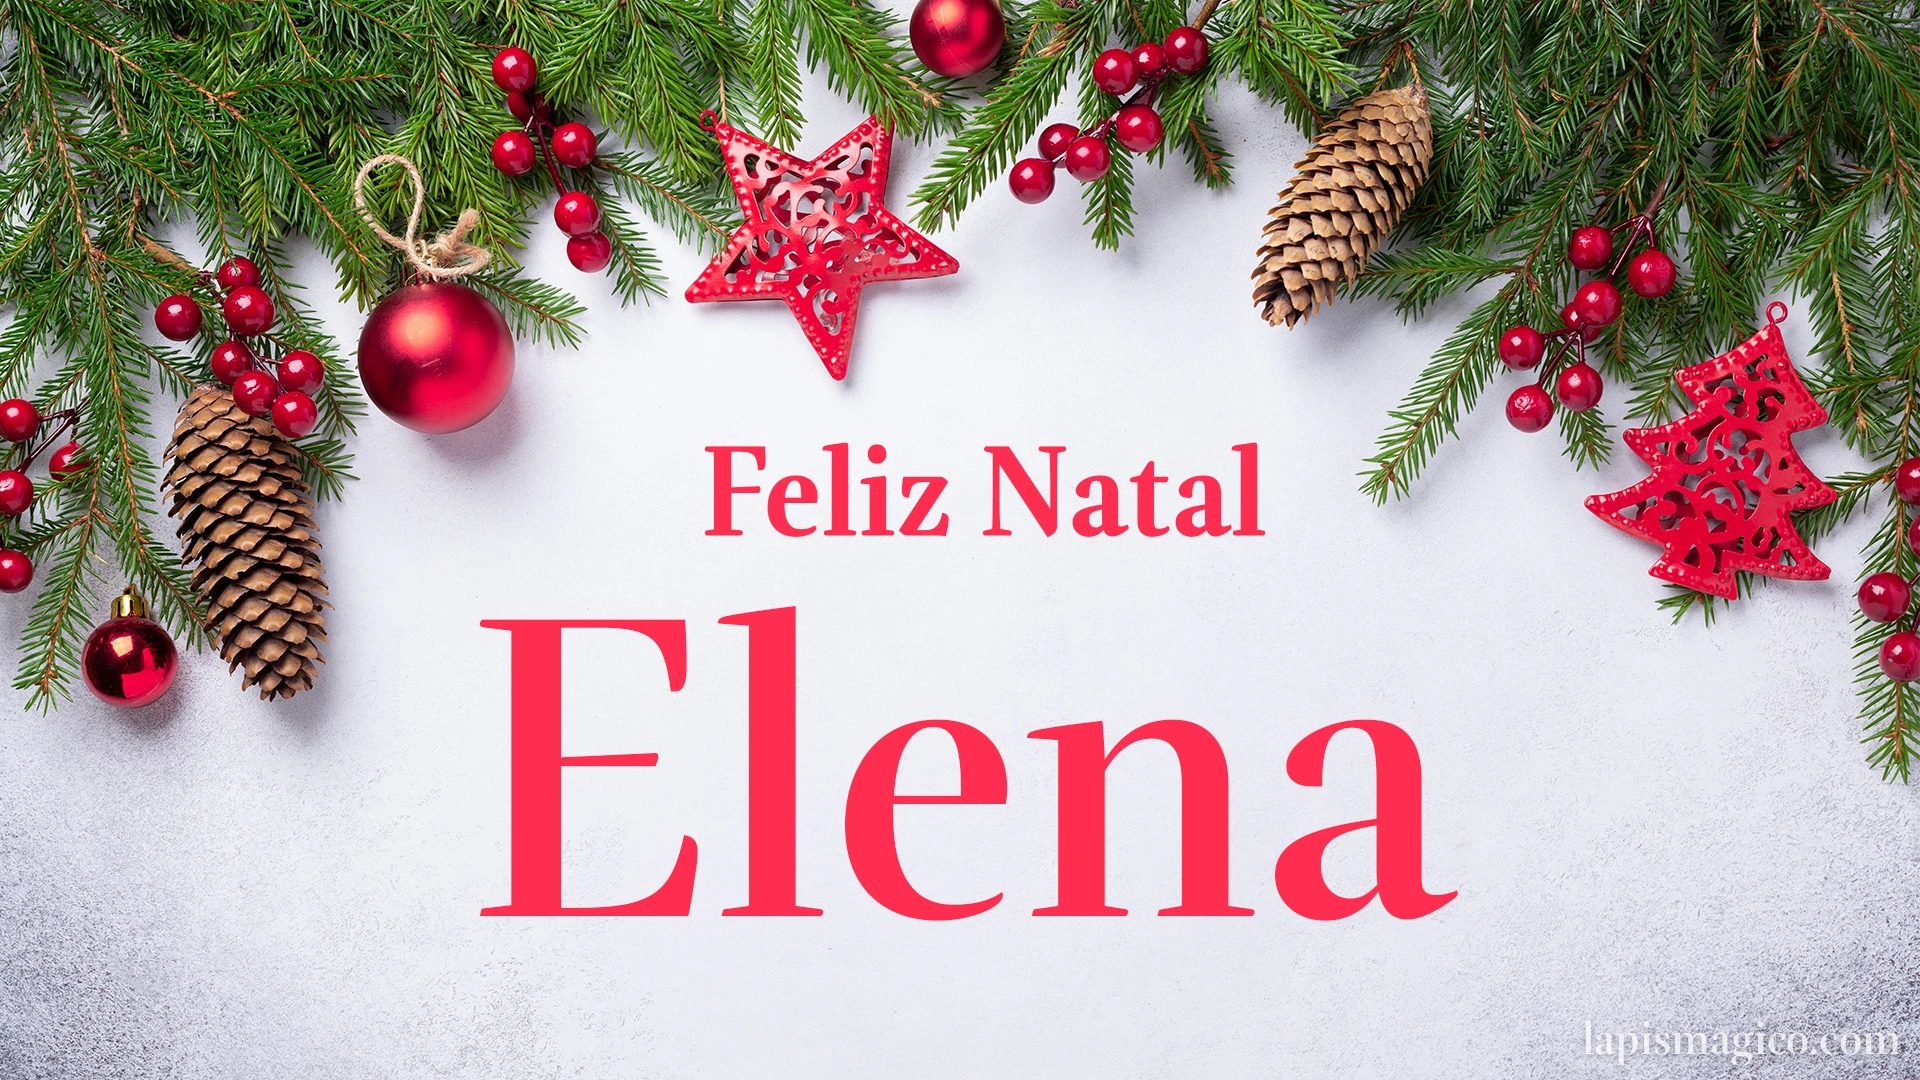 Oh Elena, cinco postais de Feliz Natal Postal com o teu nome